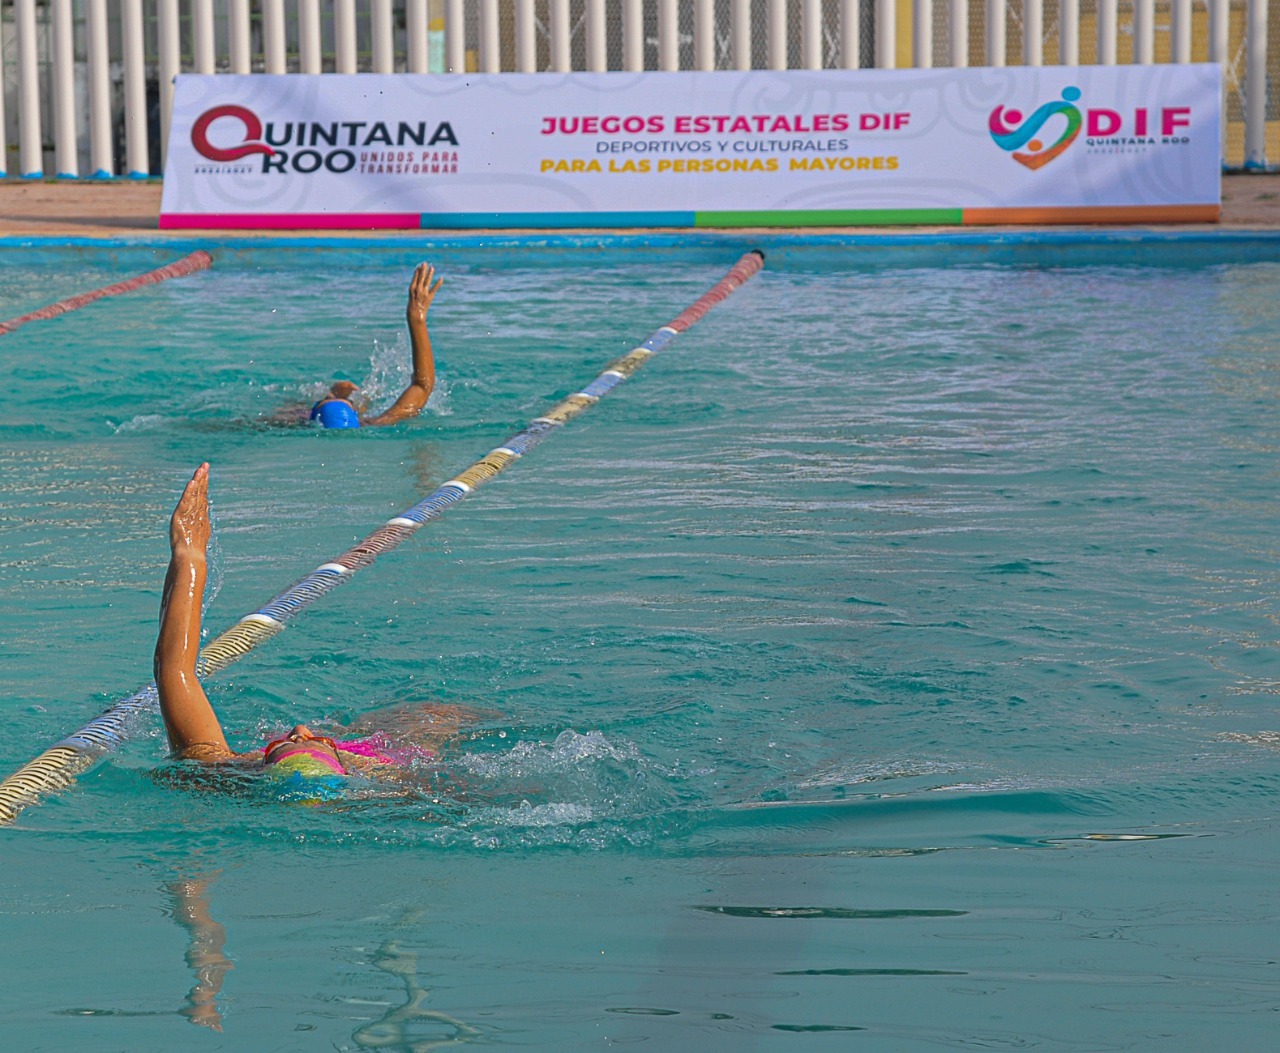 DIF-Quintana Roo realiza los Juegos Estatales Deportivos y Culturales de las Personas Mayores 2022